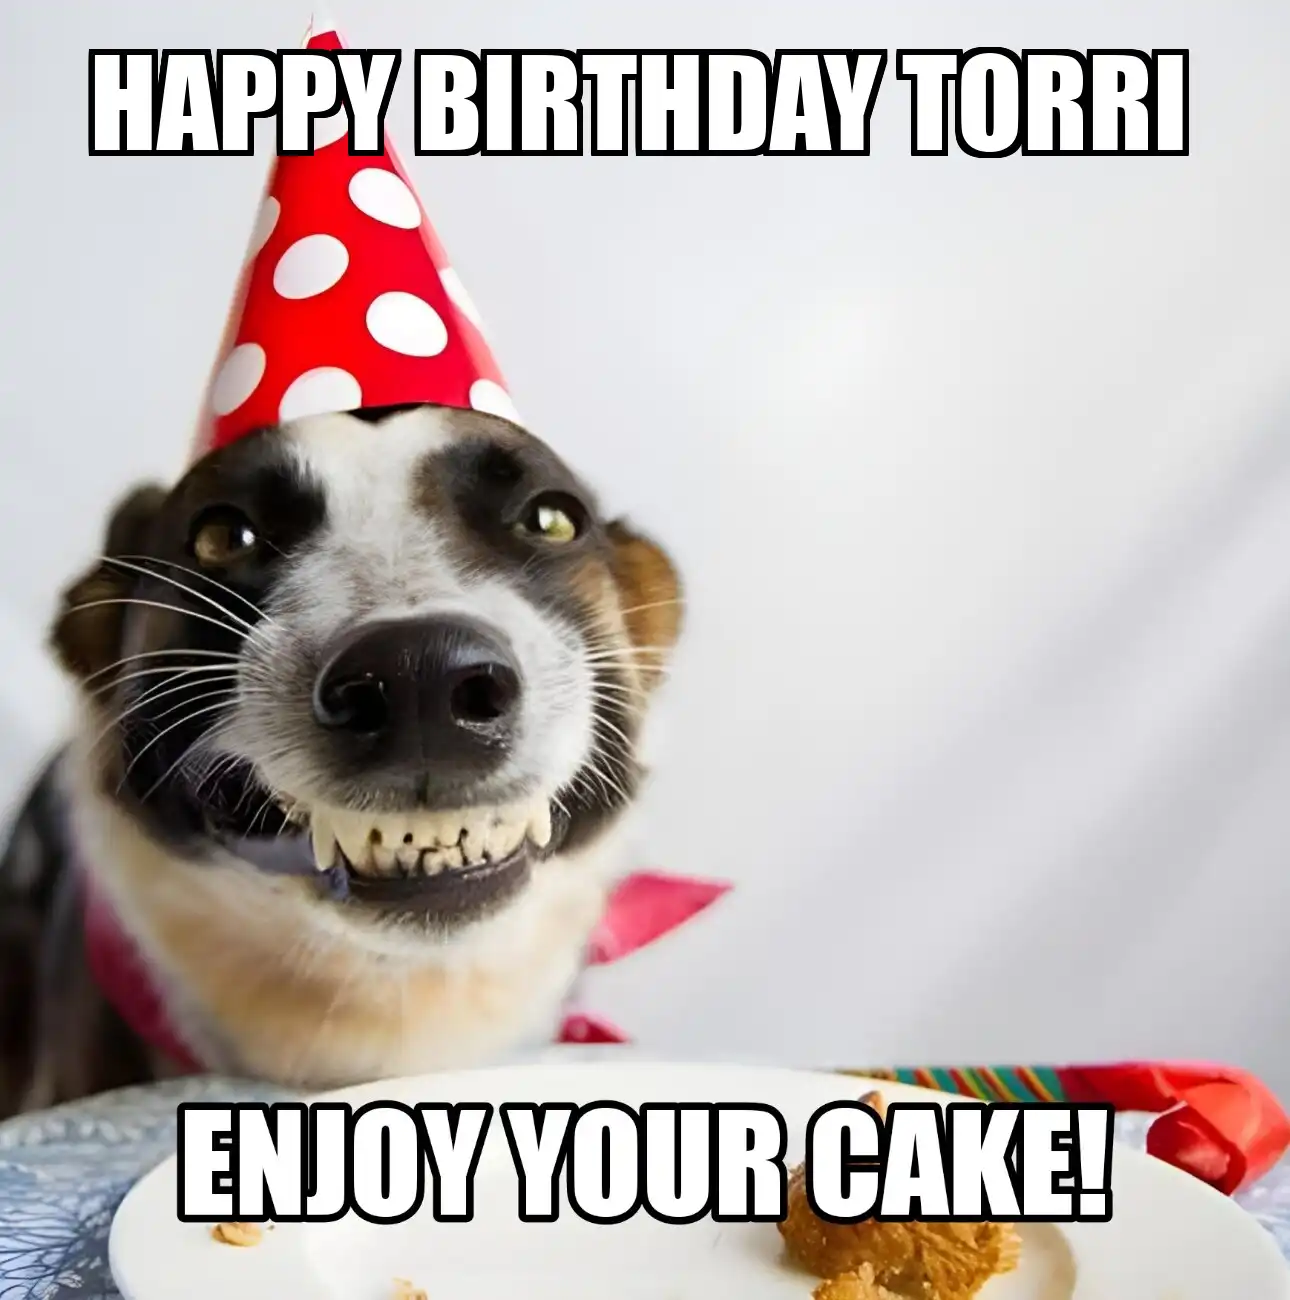 Happy Birthday Torri Enjoy Your Cake Dog Meme